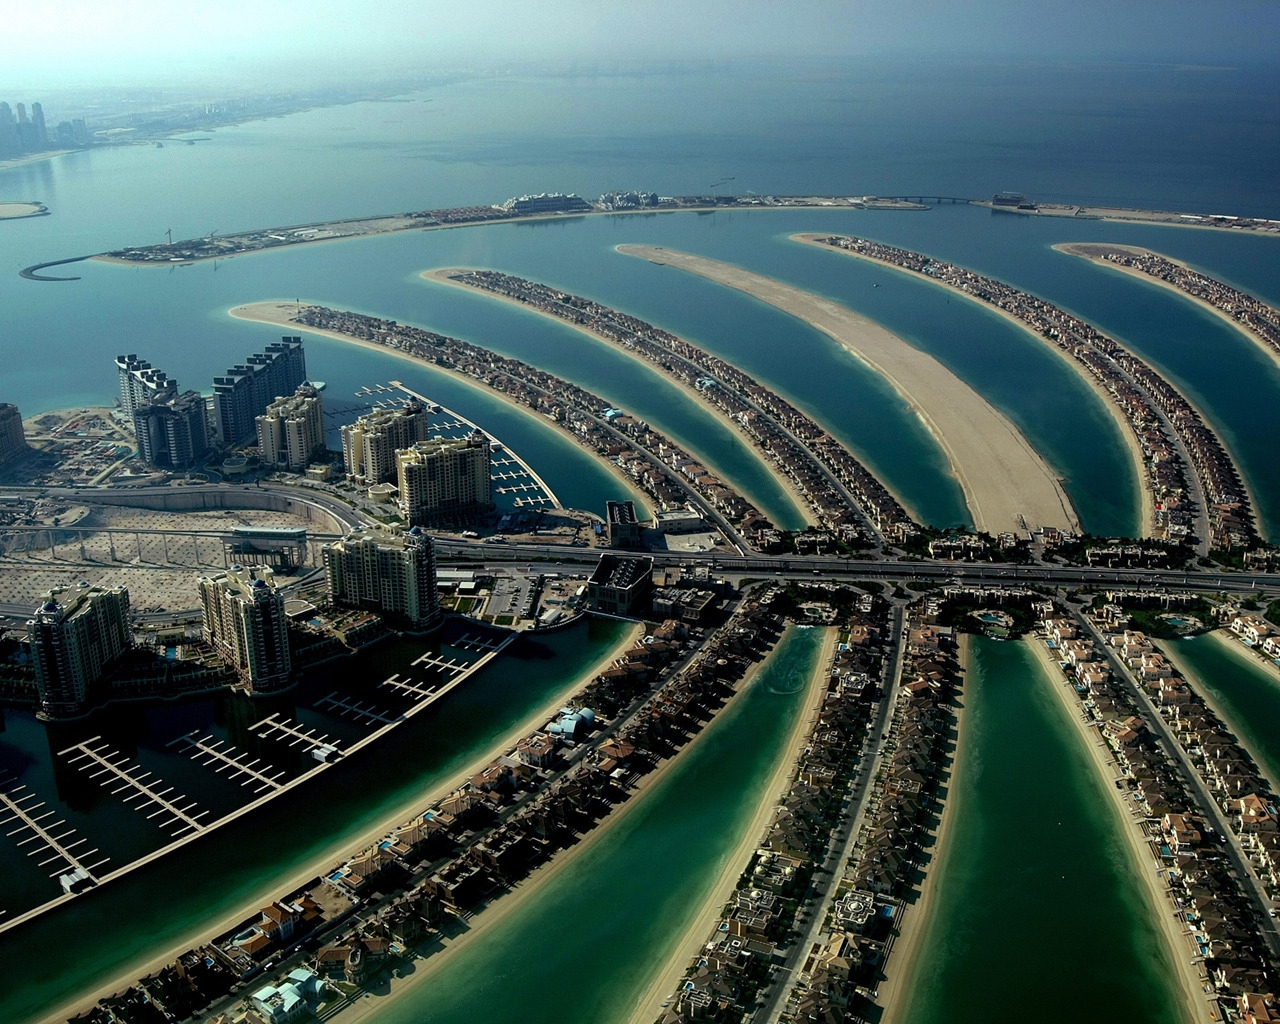 Dubai Palm Island for 1280 x 1024 resolution